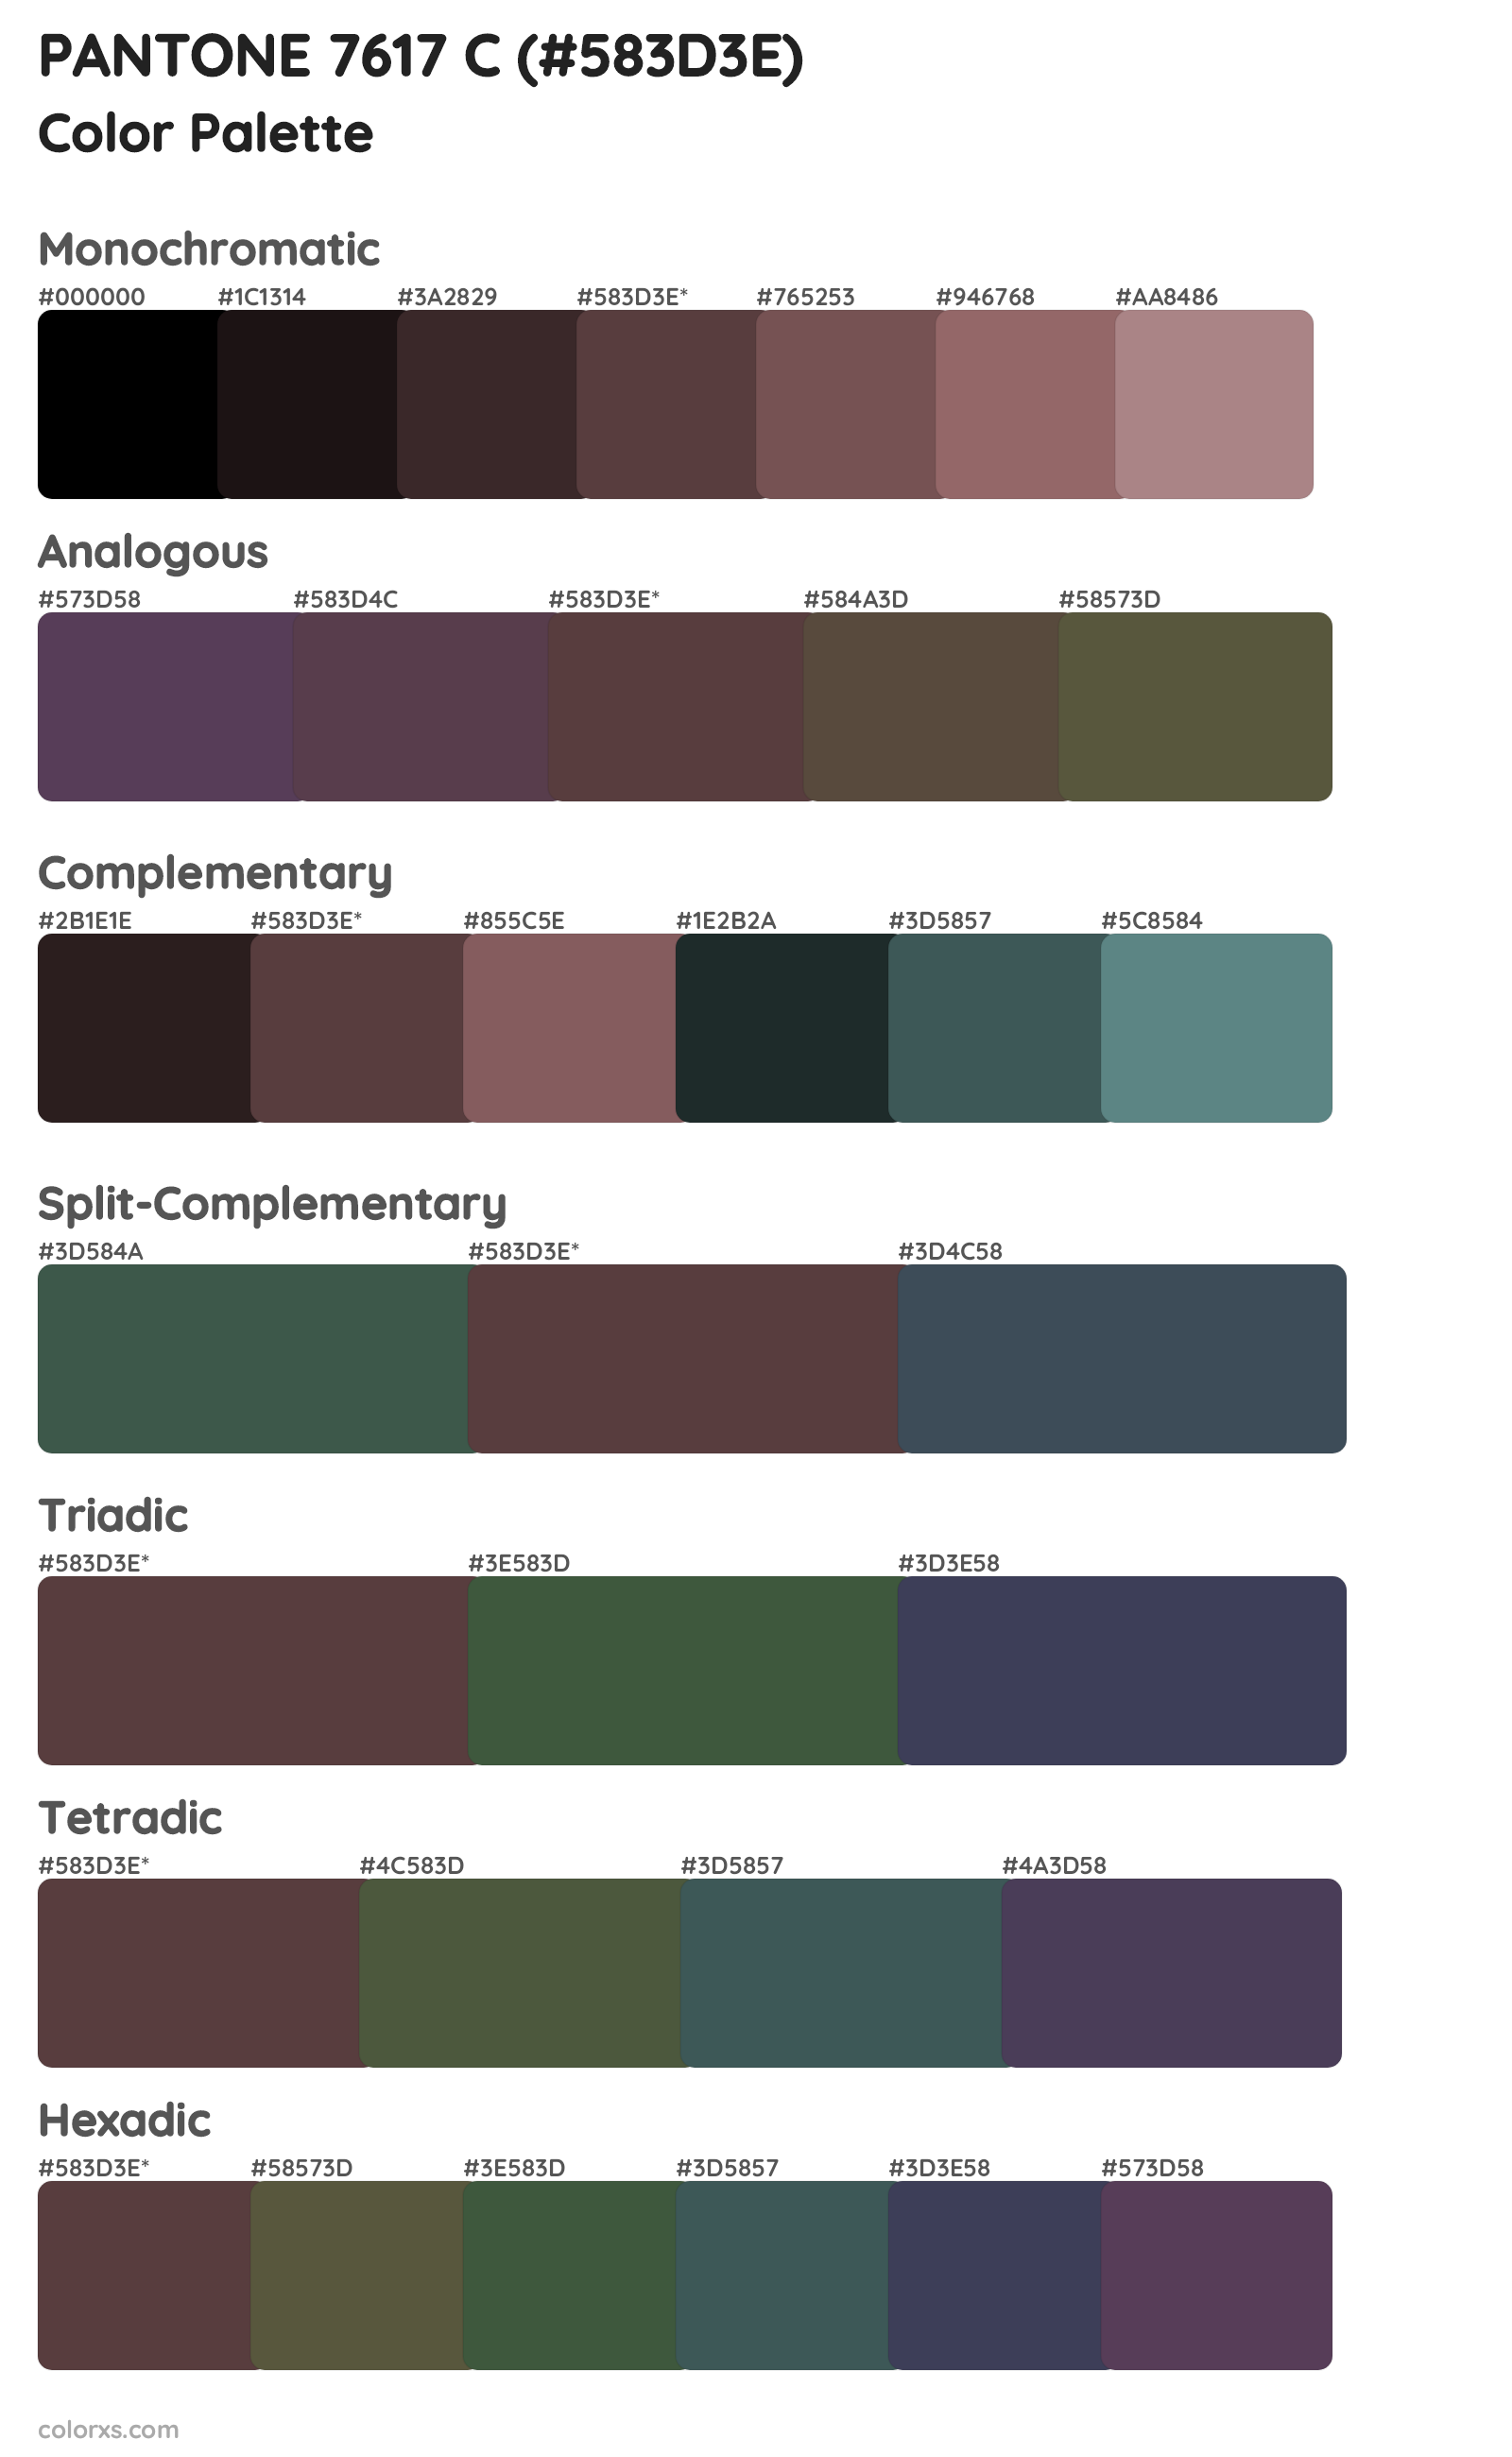 PANTONE 7617 C Color Scheme Palettes